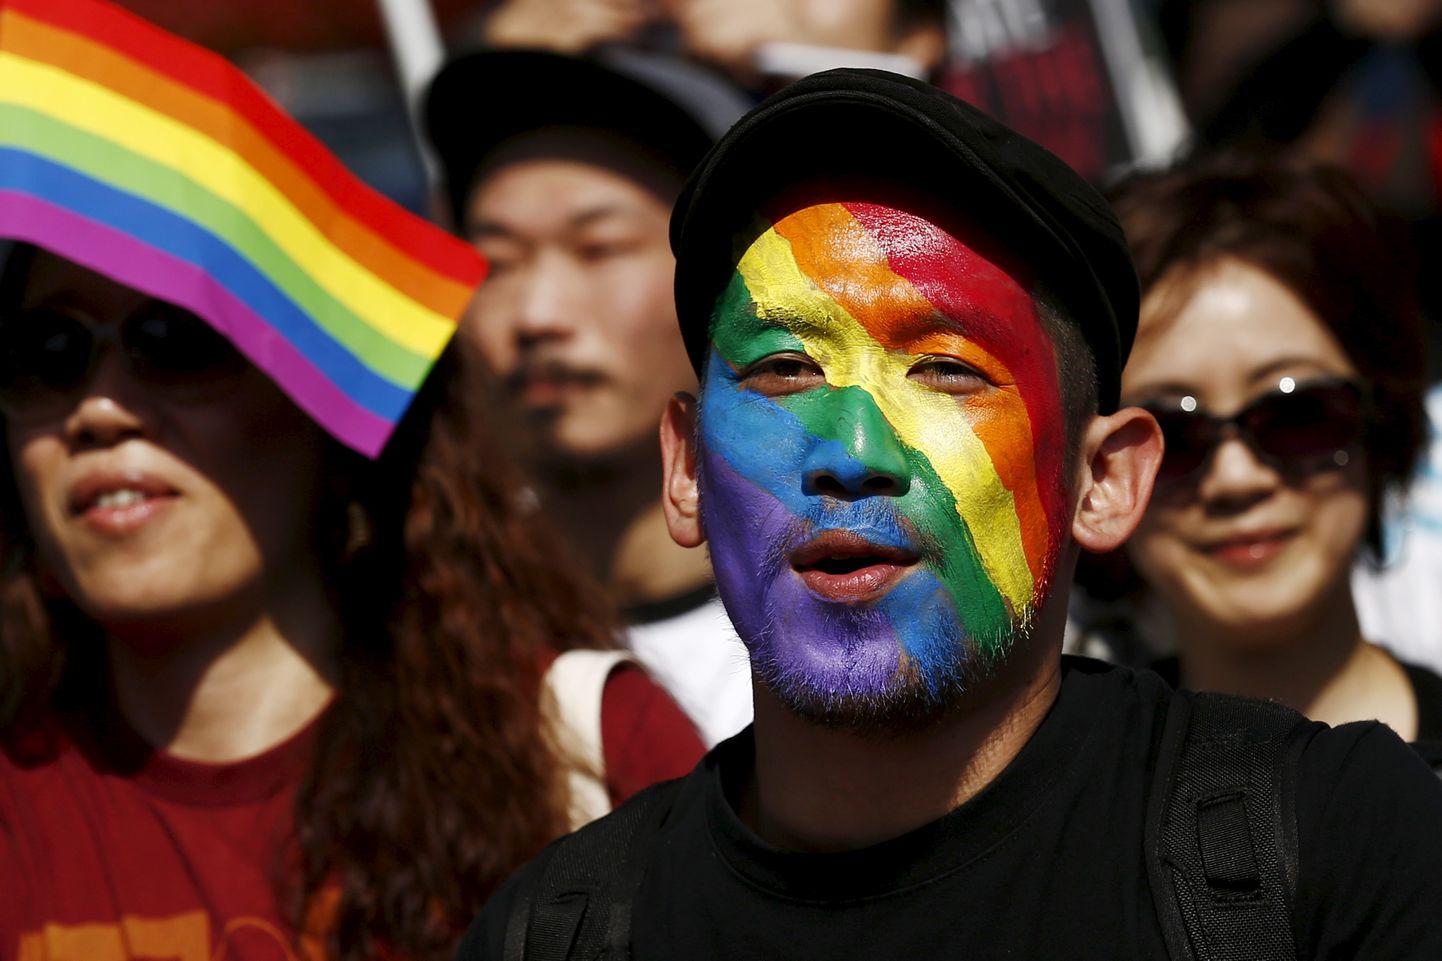 Мужчина, чье лицо раскрашено в цвета радуги, принимает участие в параде Tokyo Rainbow Pride в Токио.